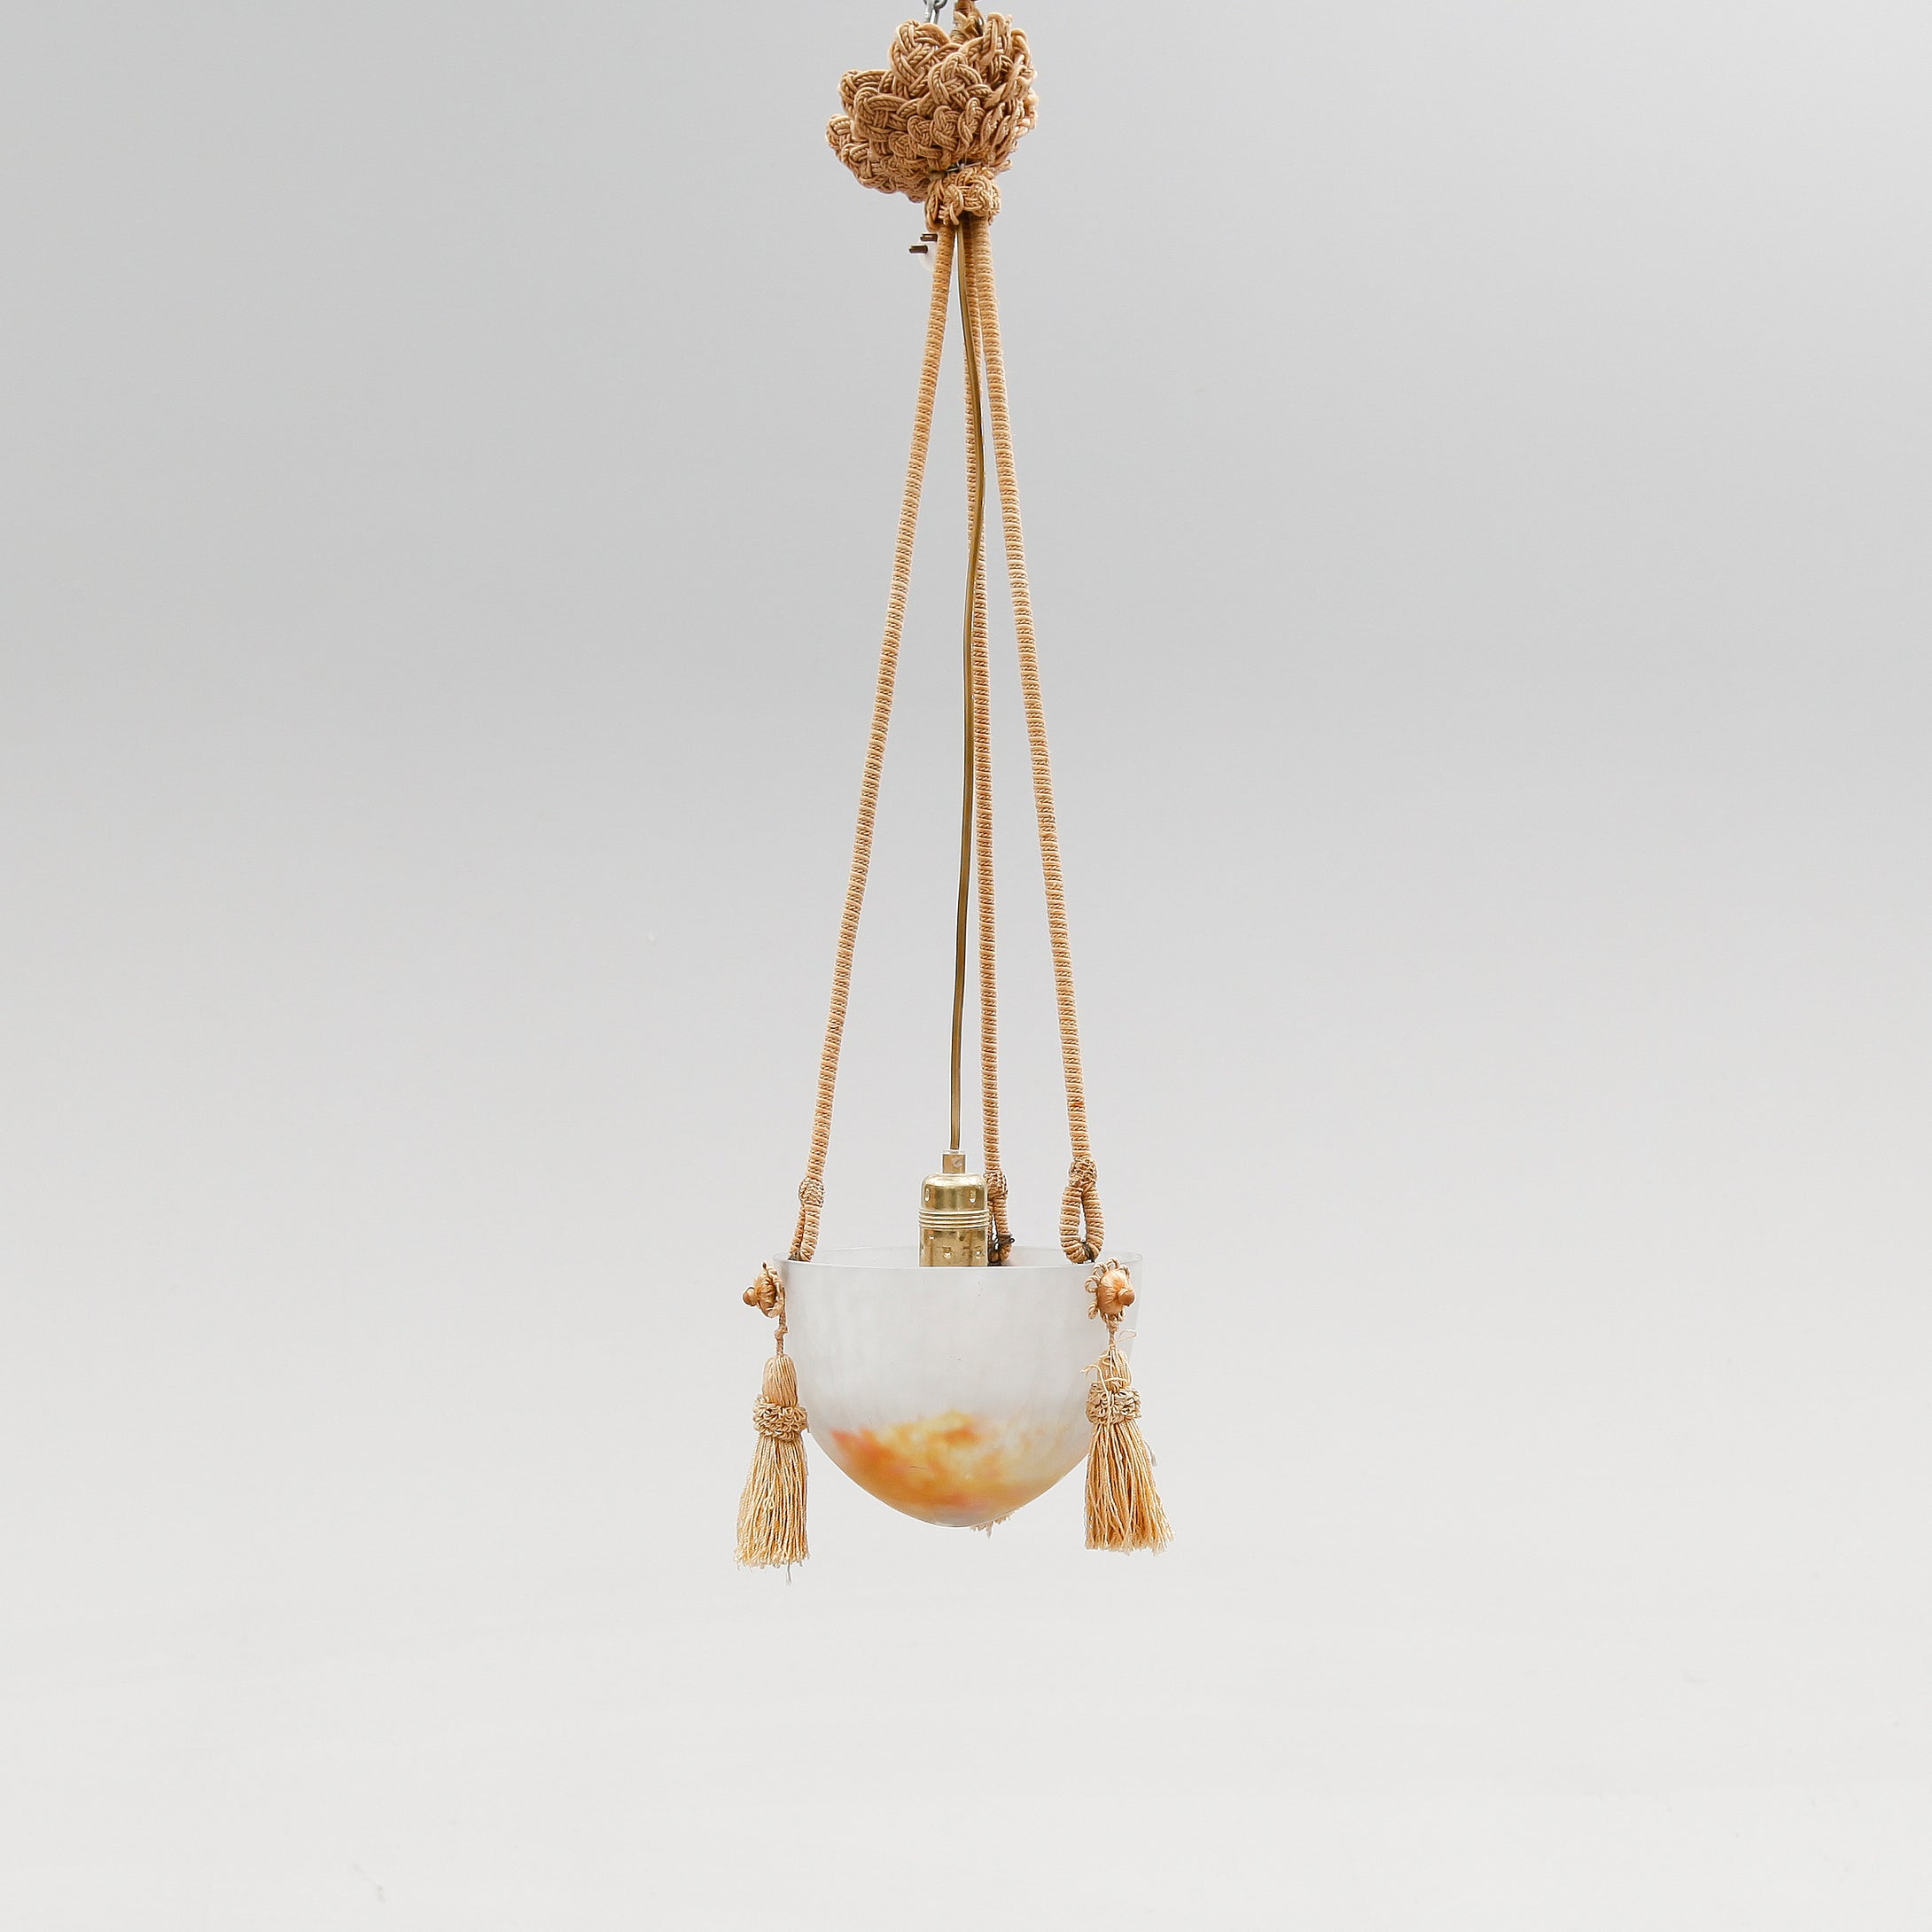 Ampel Nancy från tidigt 1900-tal. Diam. 20,5cm och total höjd 80cm. Art Nouveau Nancy lamp. Diam. 8,1